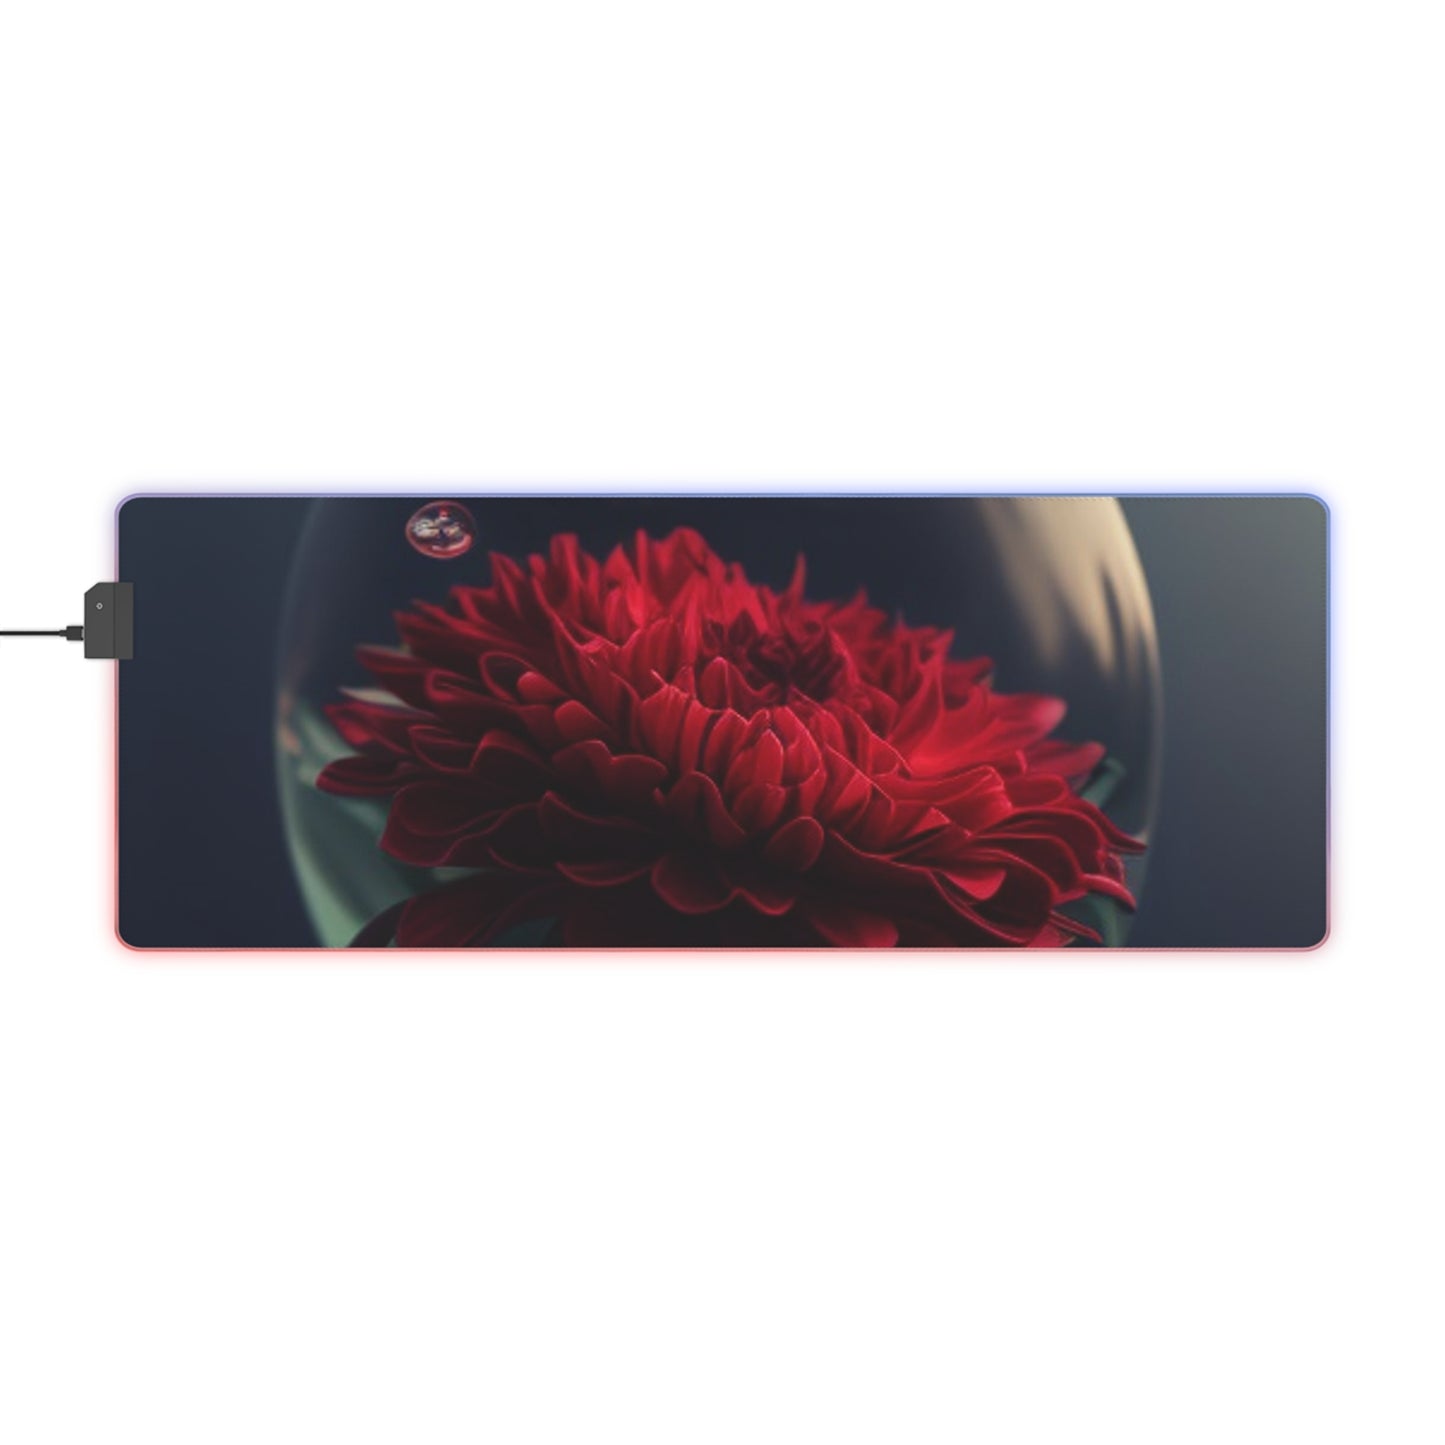 LED Gaming Mouse Pad Chrysanthemum 1